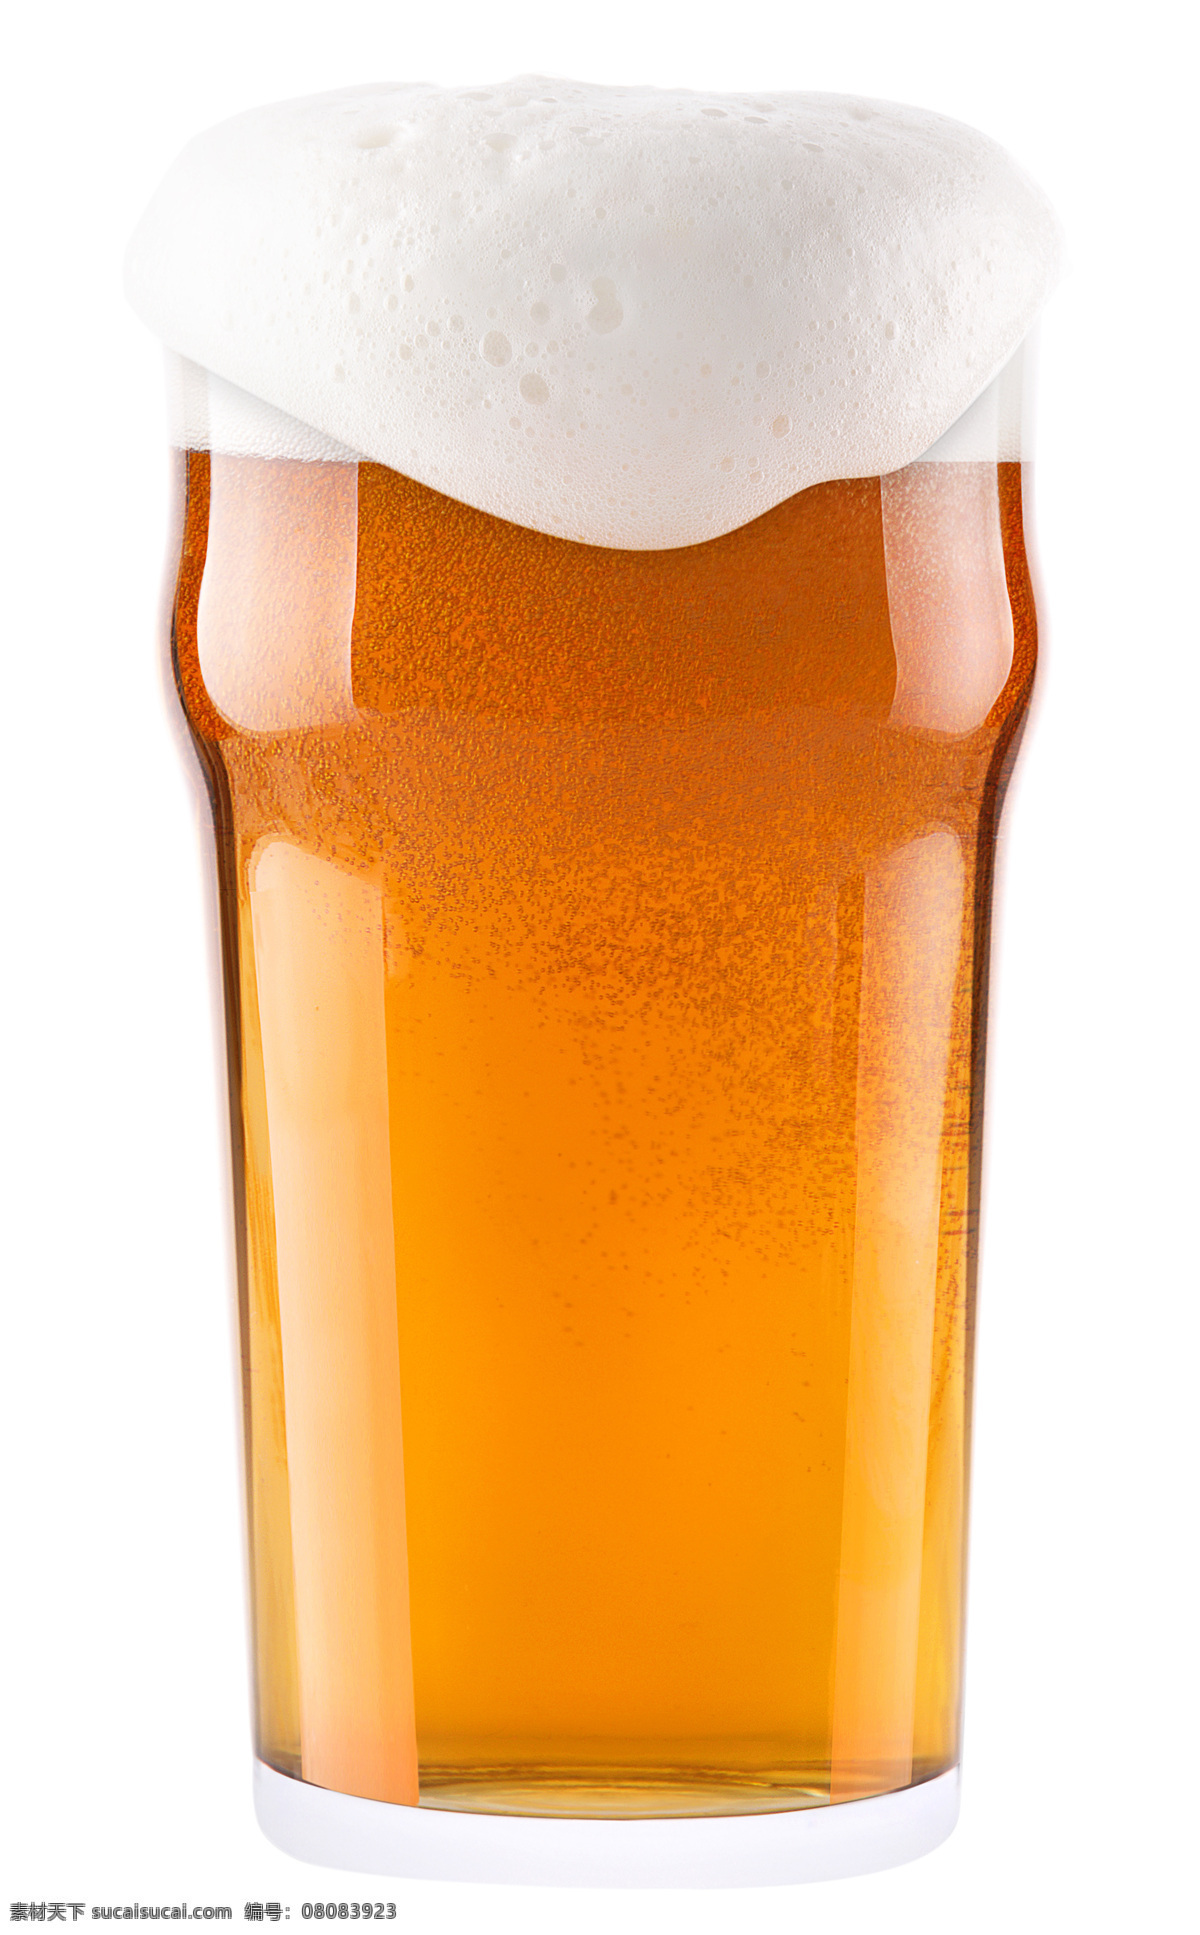 玻璃杯 内 金黄色 啤酒 酒杯 光 饮料 饰品 酒水 餐饮 广告背景 酒水饮料 餐饮美食 酒类图片